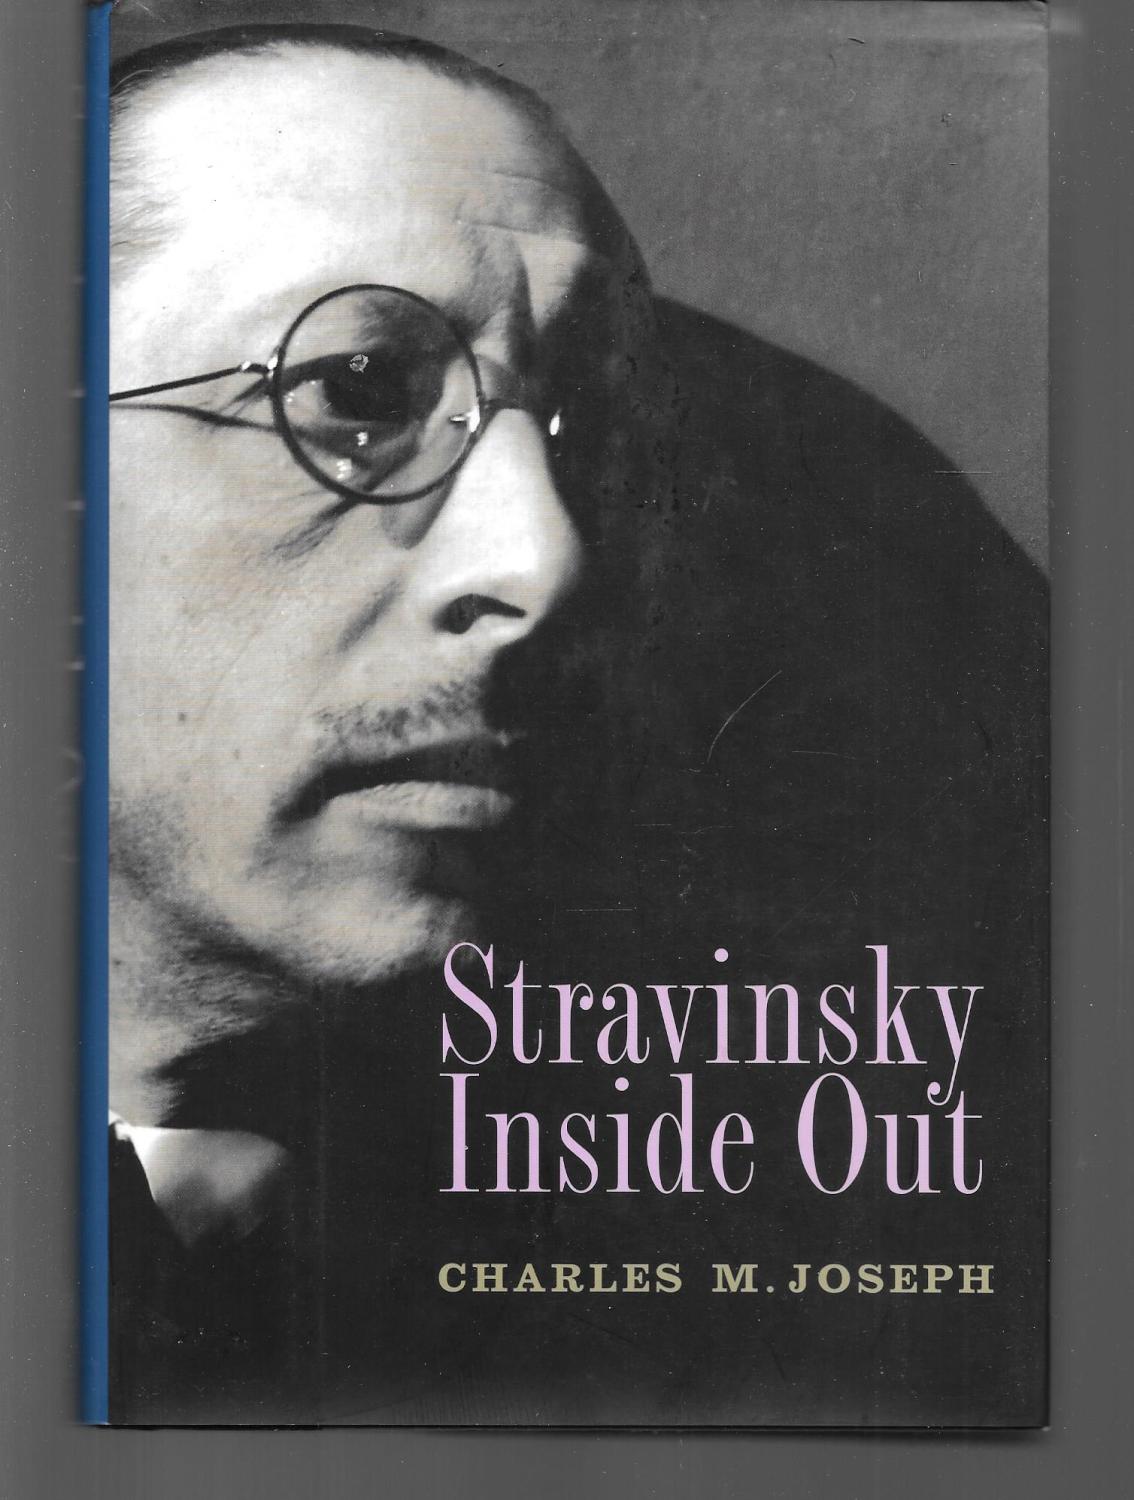 stravinsky inside out - charles joseph ( igor stravinsky )